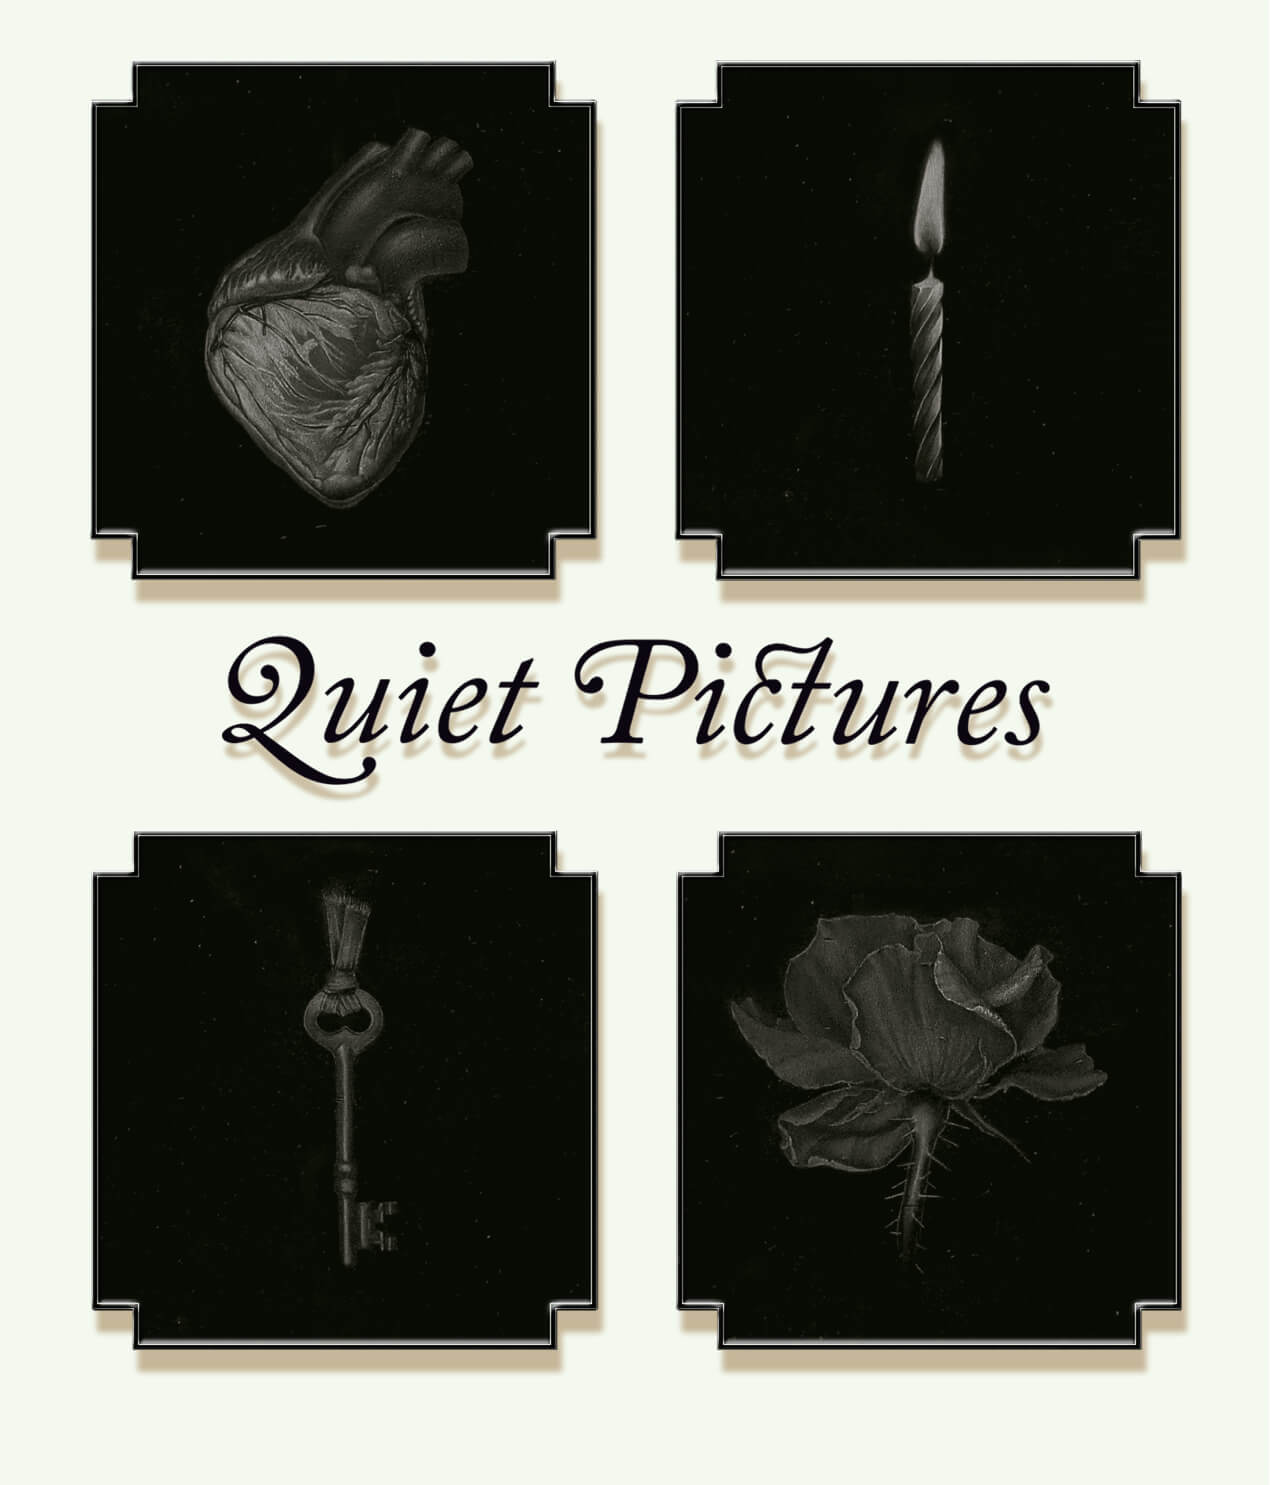 Quiet Pictures